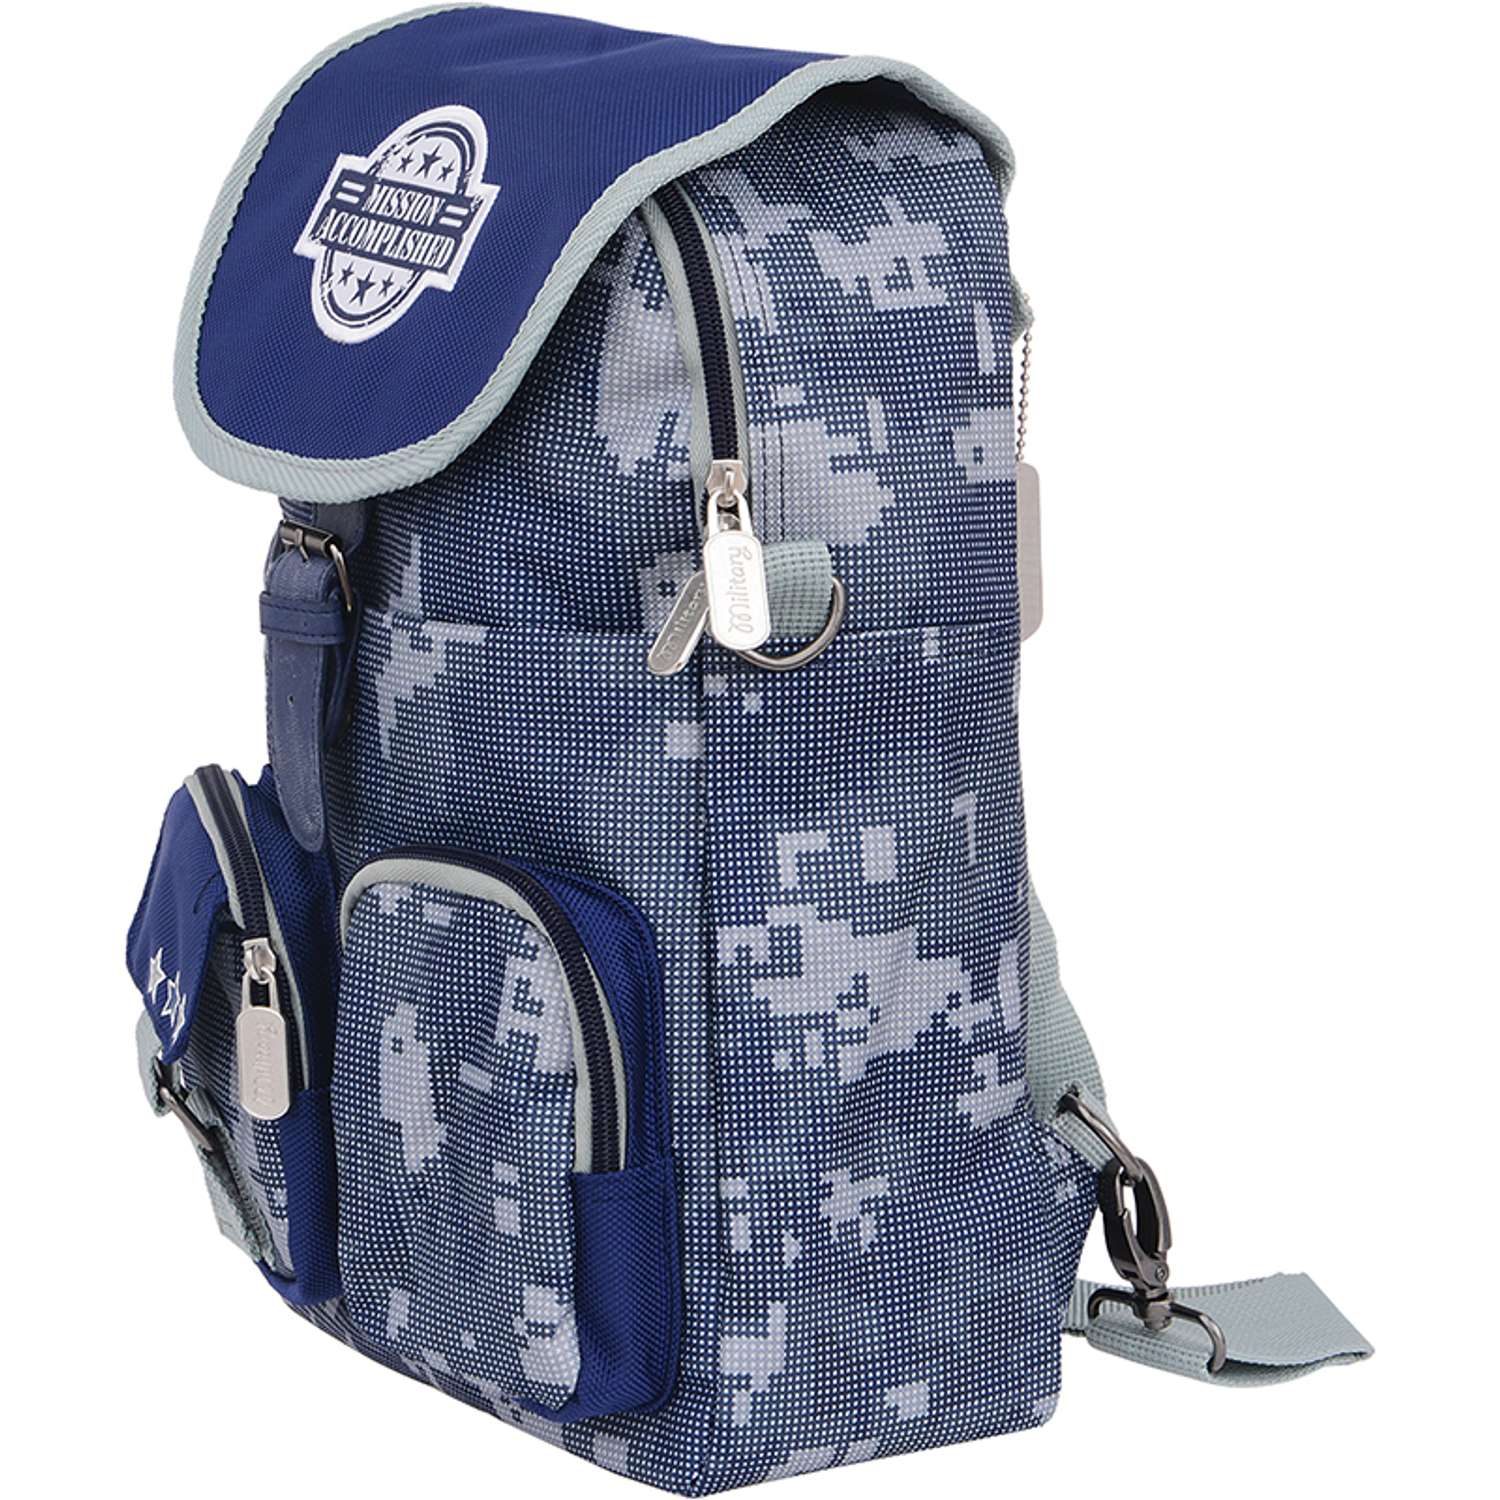 Рюкзак Proff для мальчика (сине/серый) - фото 2